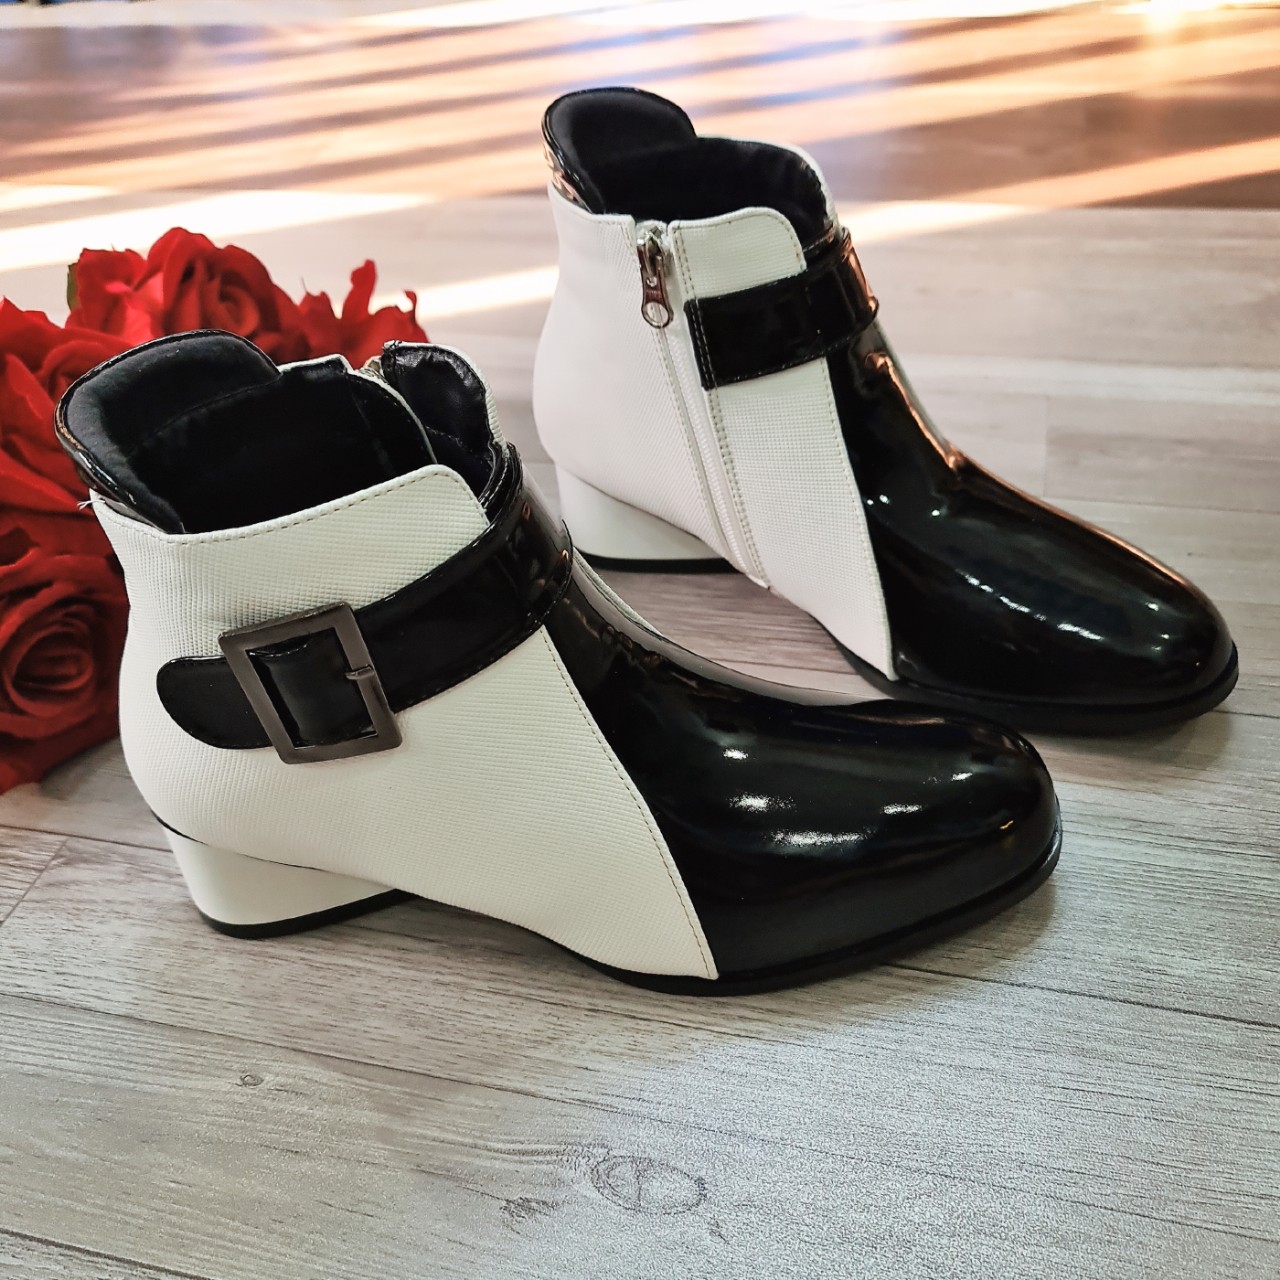 Boots thời trang nữ phối màu ROSATA RO589 - 5p - HÀNG VIỆT NAM - BKSTORE